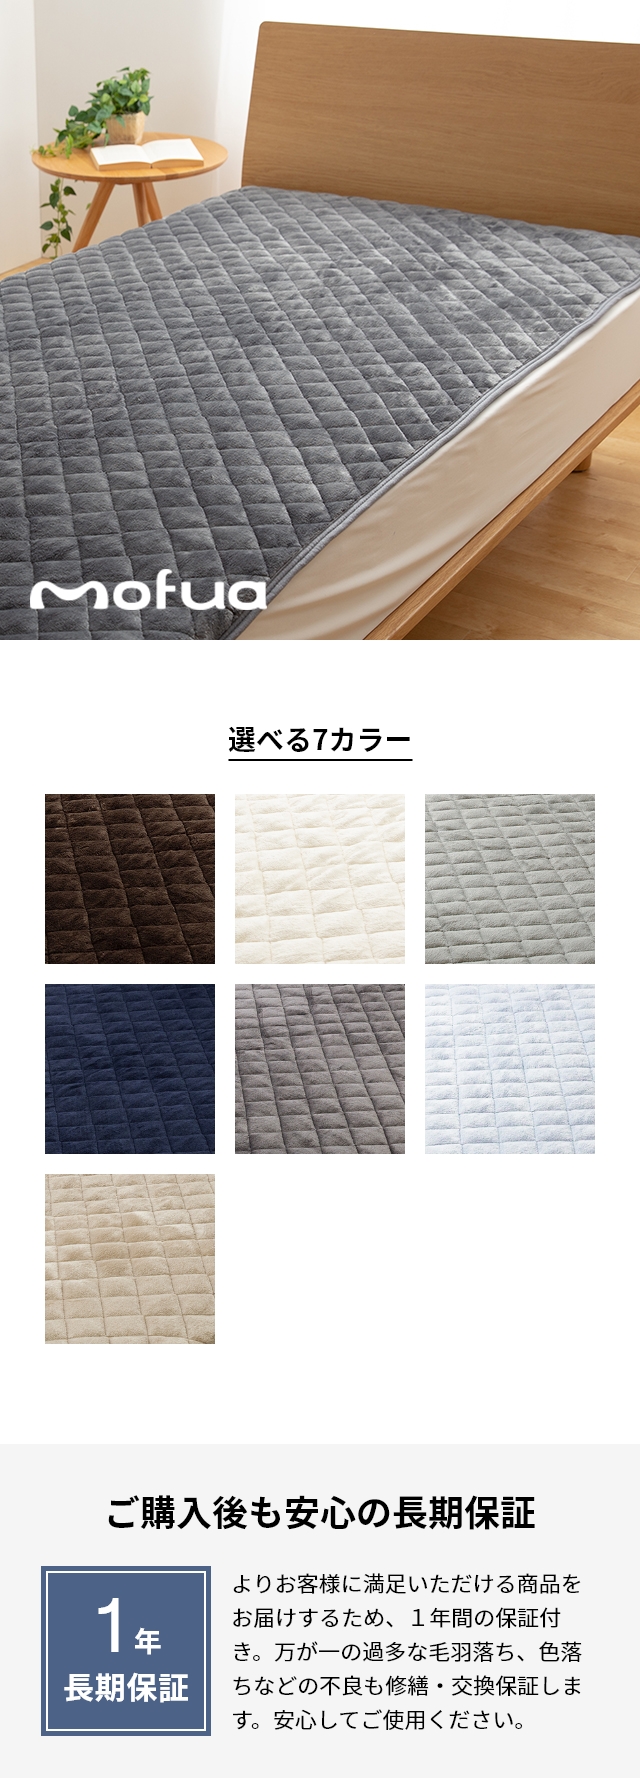 mofua (モフア) プレミアムマイクロファイバー敷パッド SD セミダブル